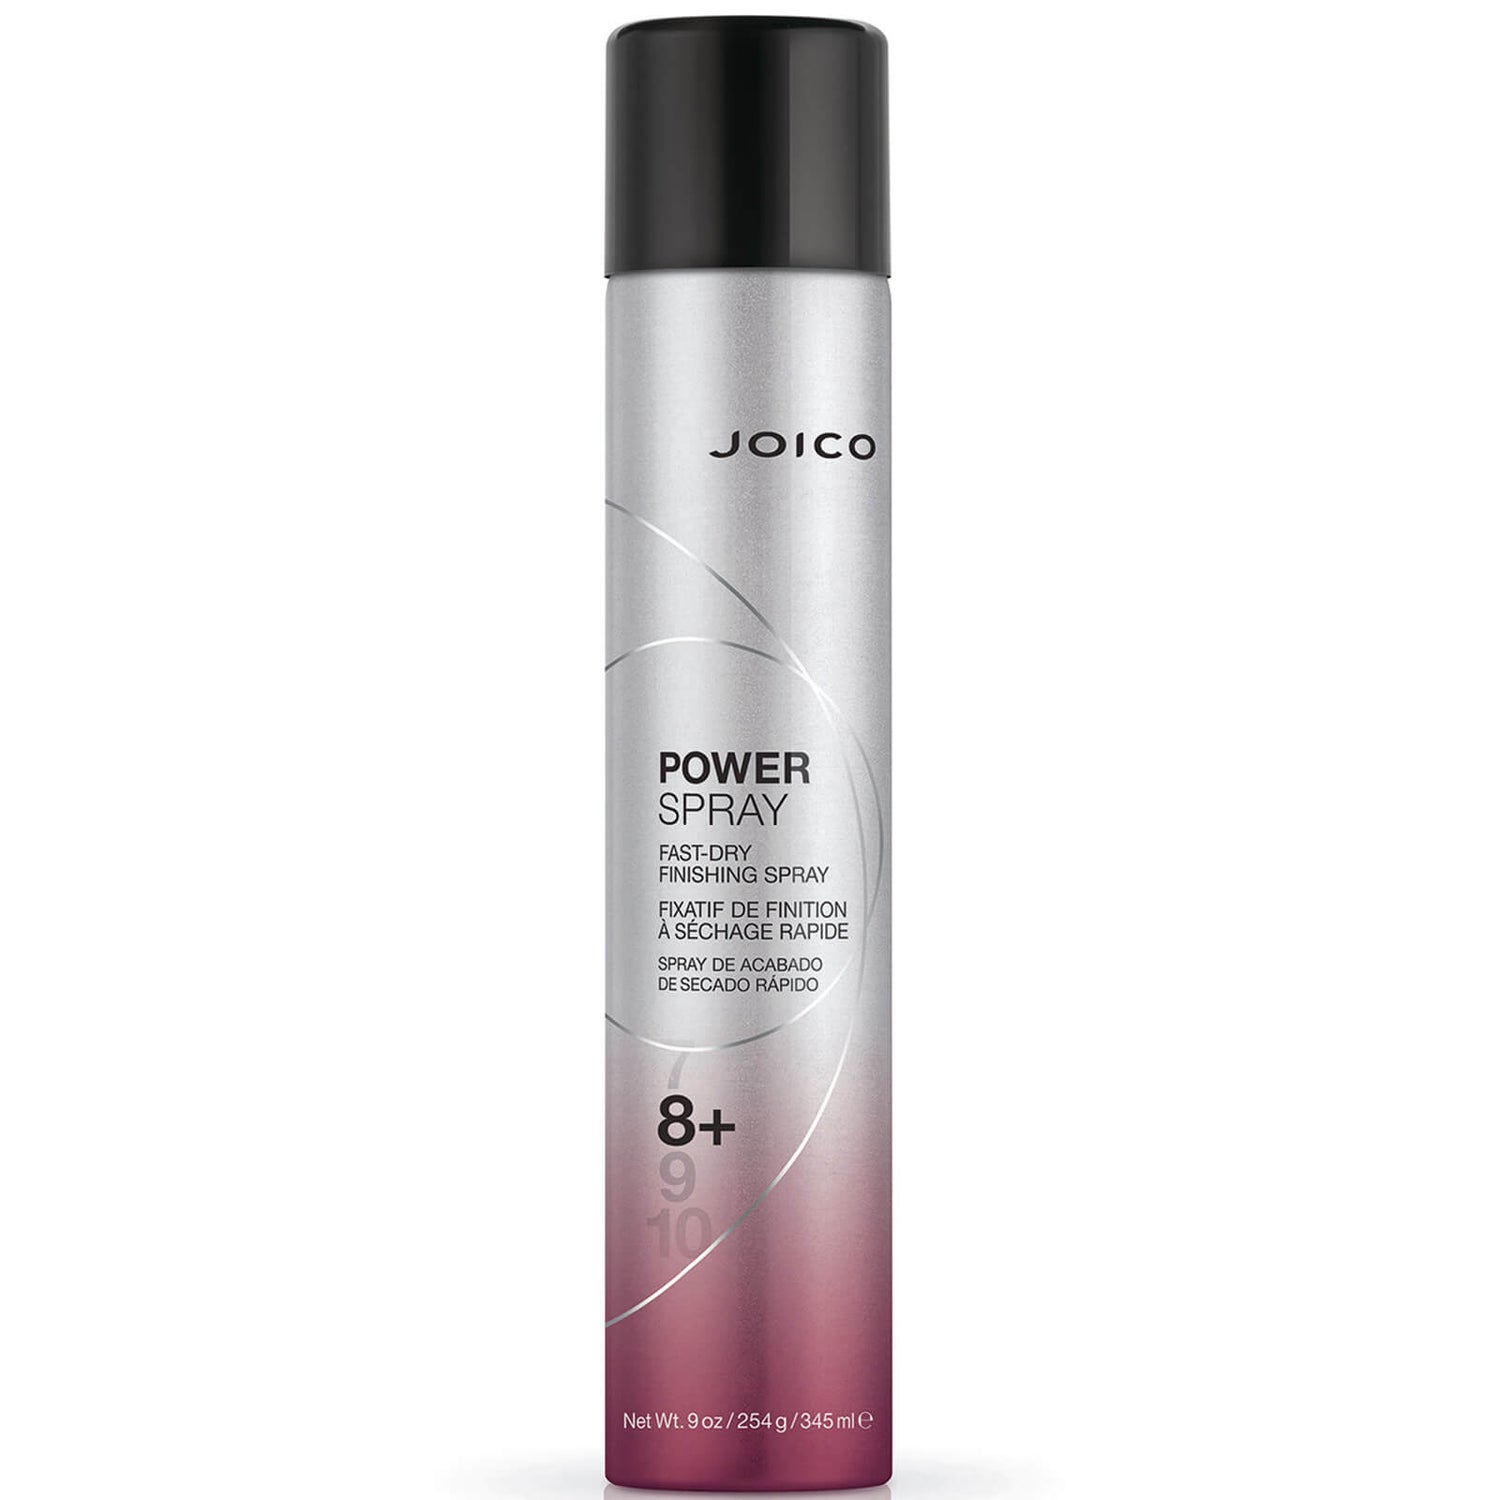 Joico Power Spray Haarspray (300 ml)